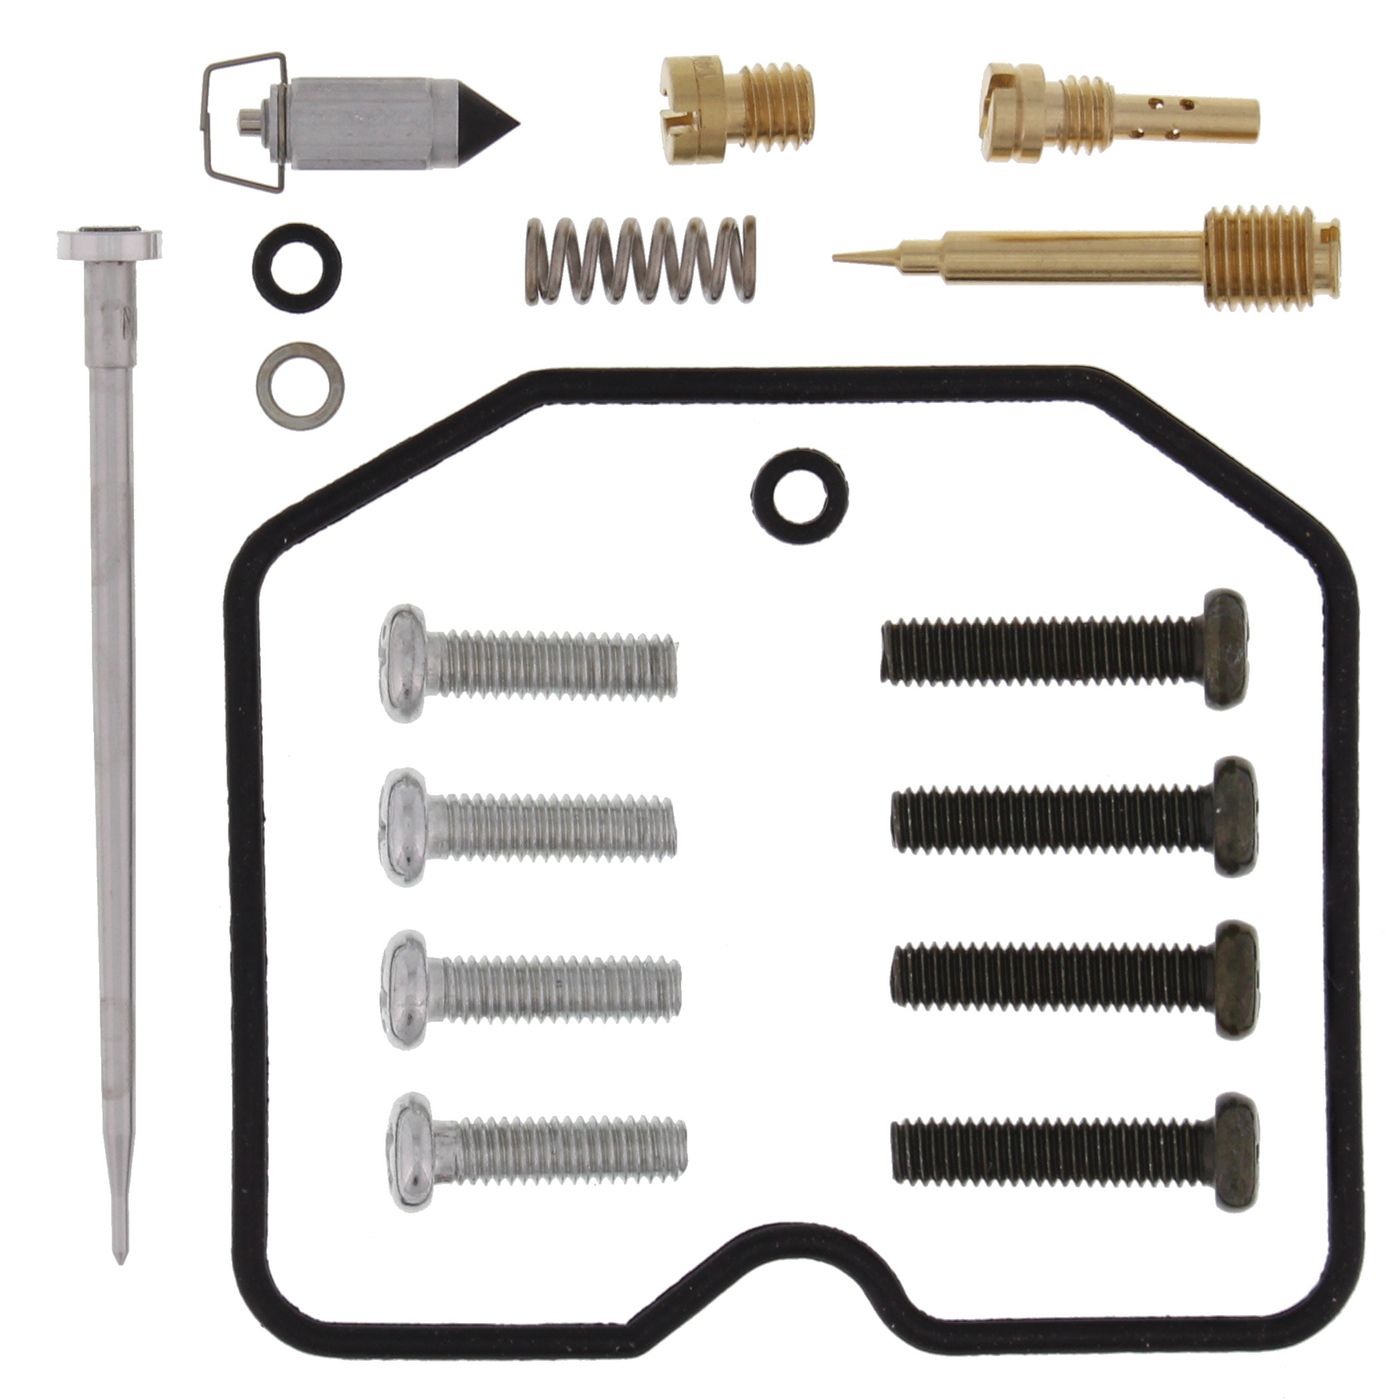 Wrp Carb Repair Kits - WRP261100 image